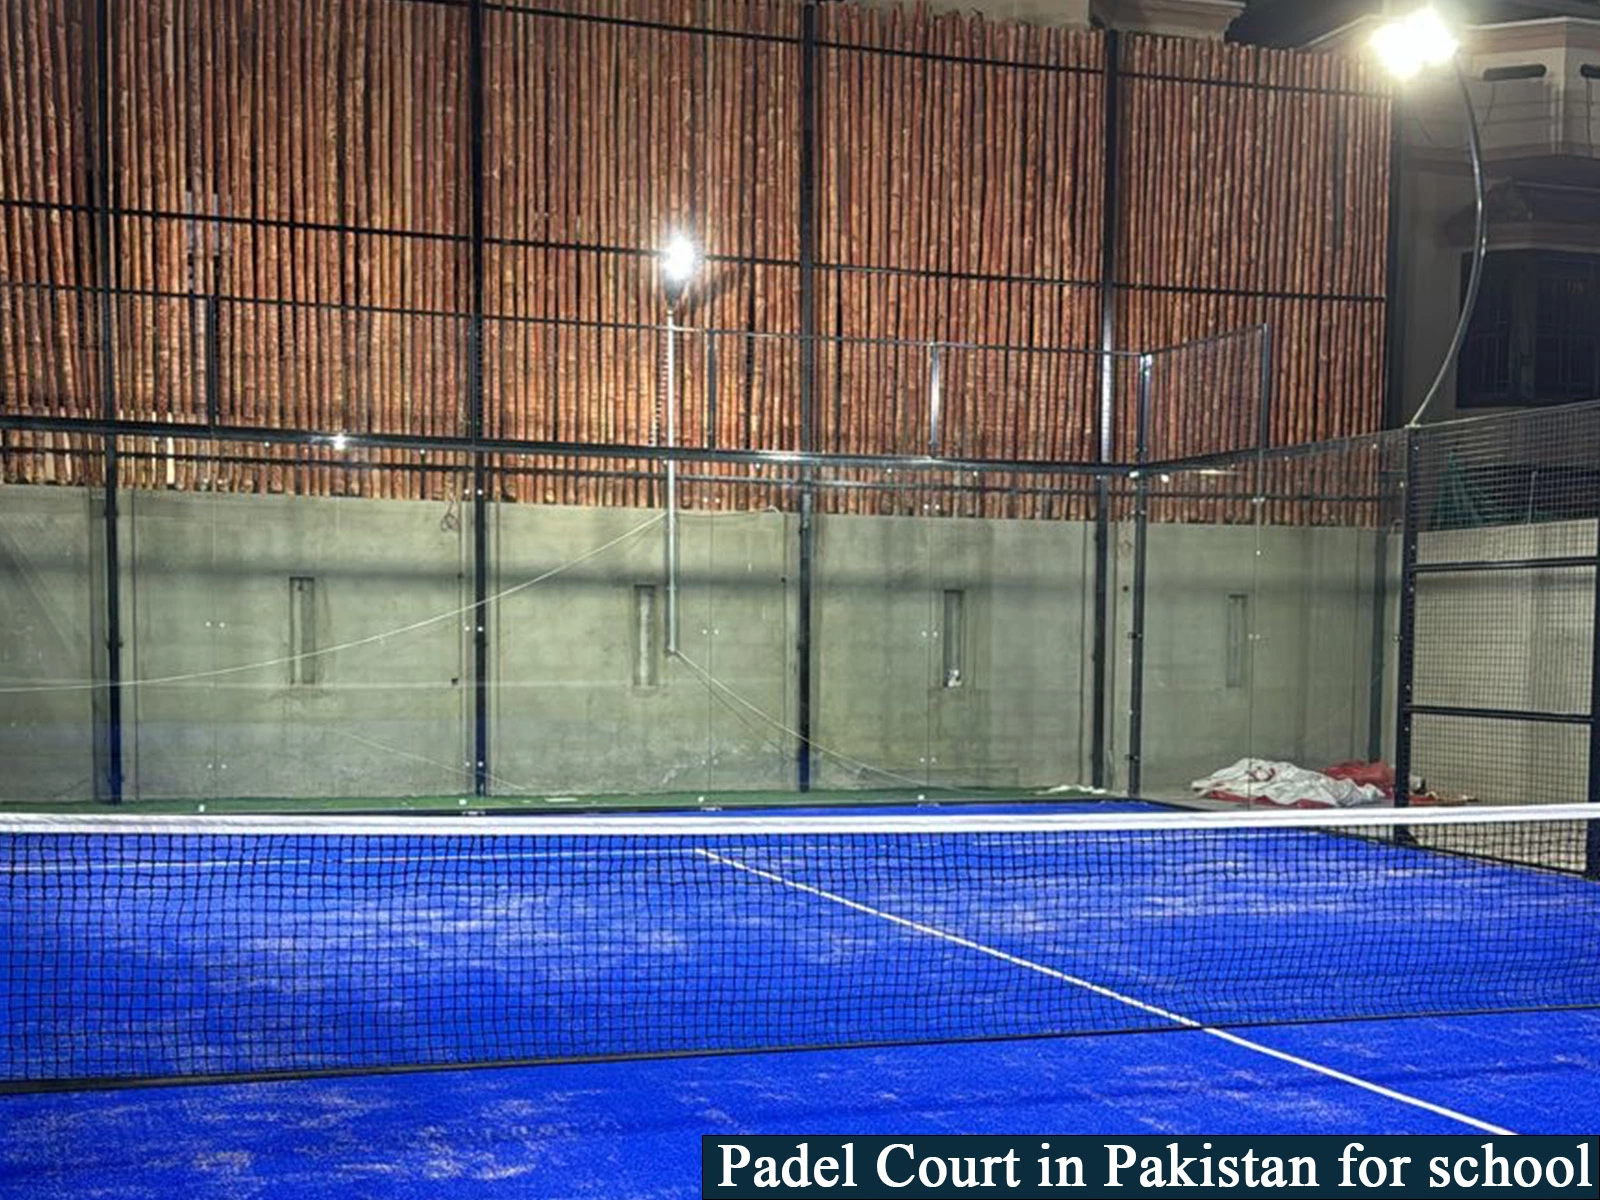 Padel Court in Pakistan for school